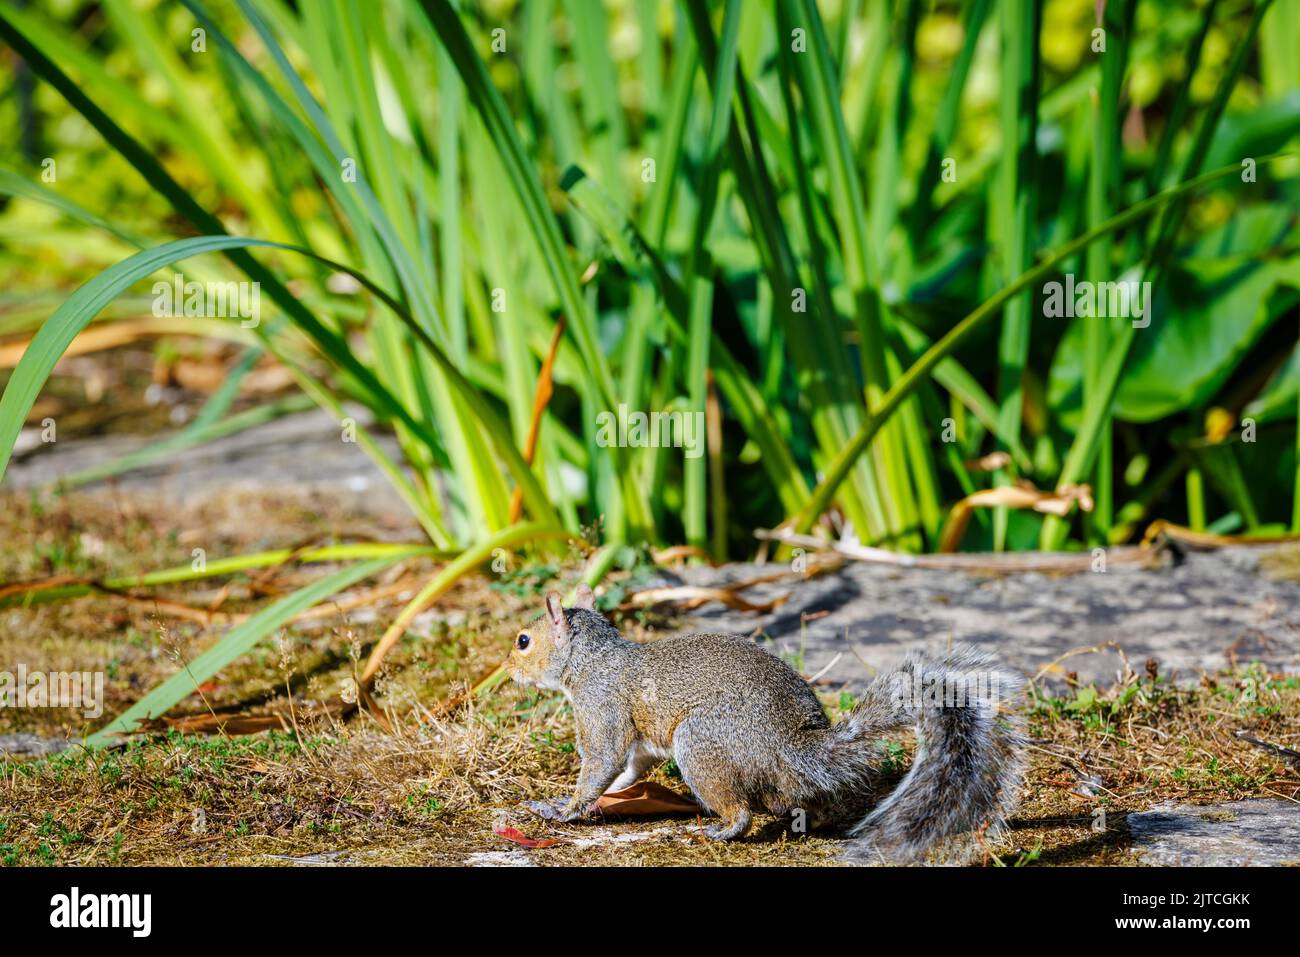 Ein graues Eichhörnchen, Sciurus carolinensis, auf dem Boden in einem Garten in Surrey, Südostengland, eine invasive eingeschleppte Art, die heute ein häufiger Schädling ist Stockfoto